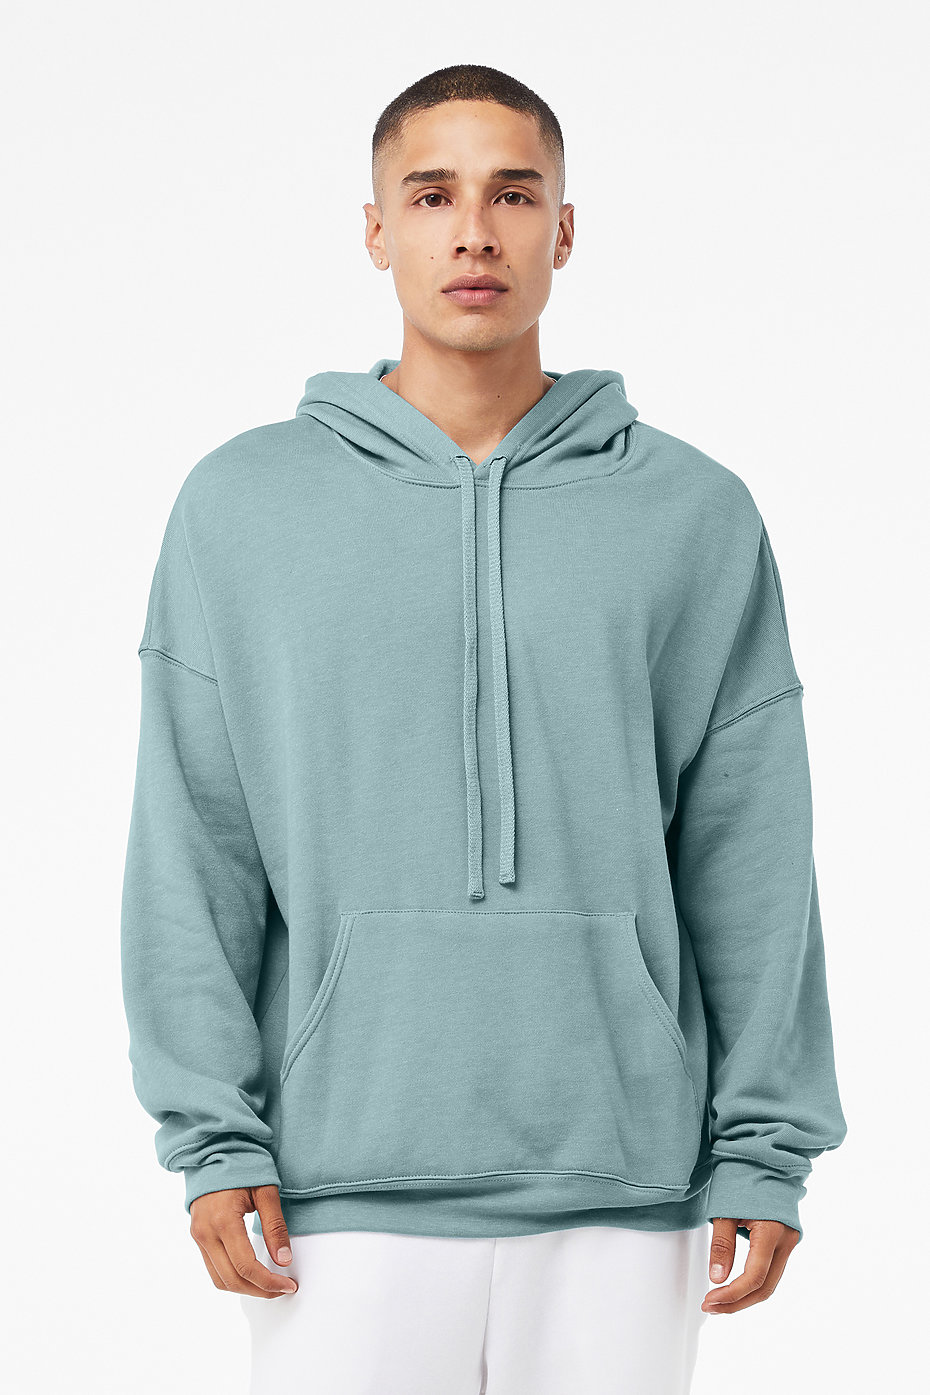 AMDBEL Men's Sweatshirts No Hood Graphic Hoodies For Men Cotton